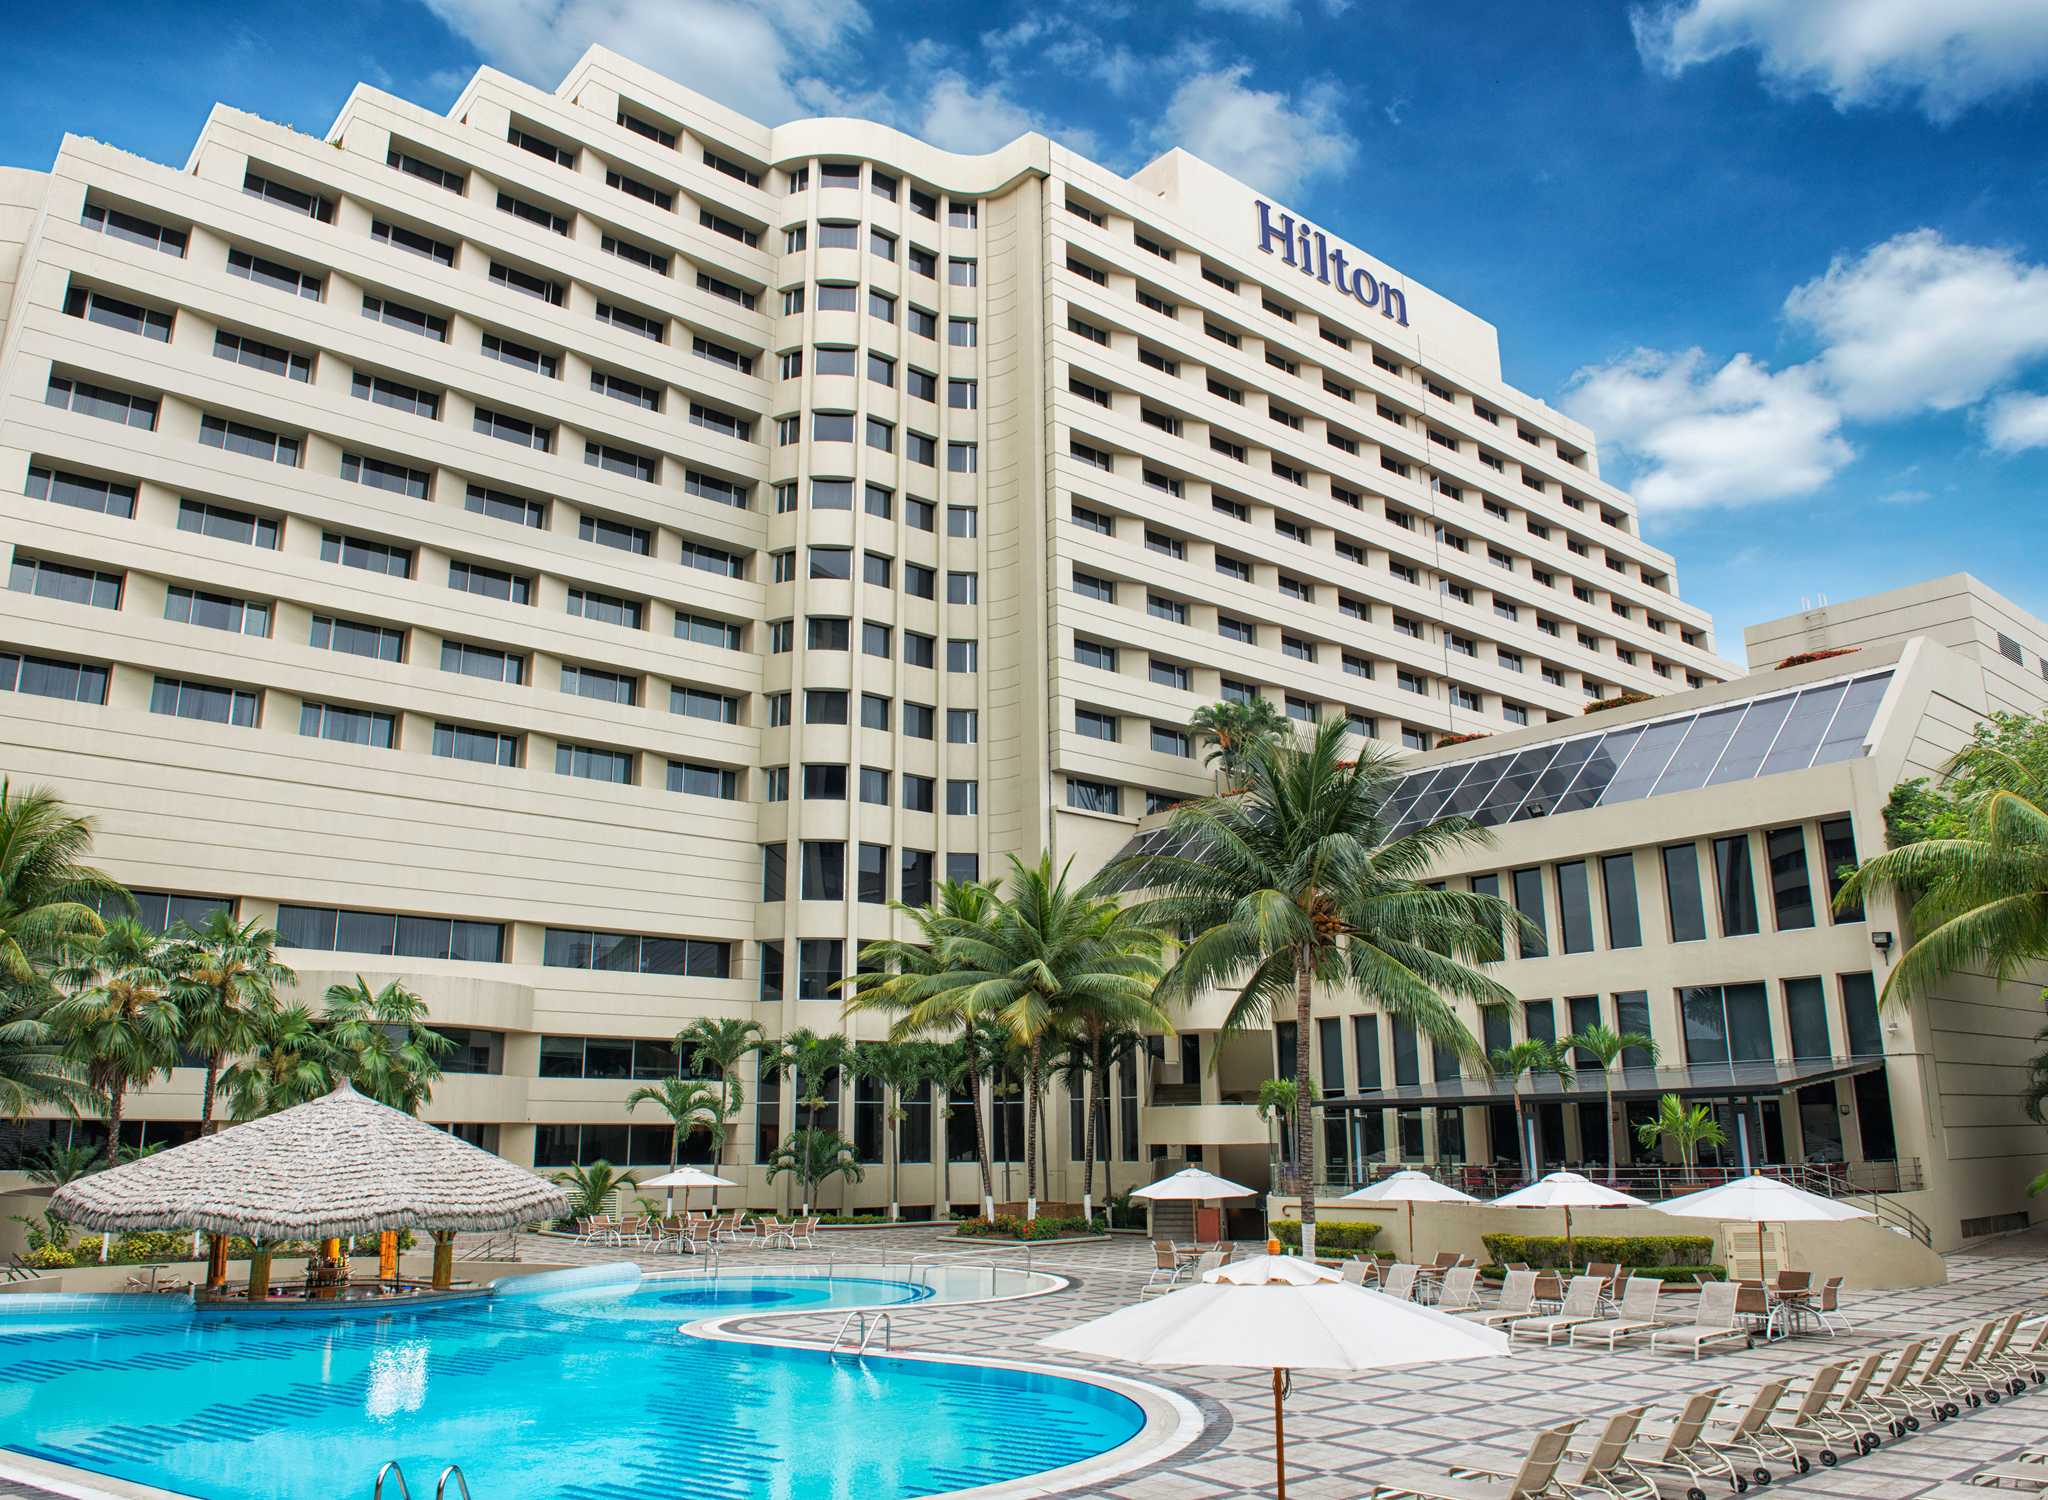 Hotel Hilton Colón Guayaquil